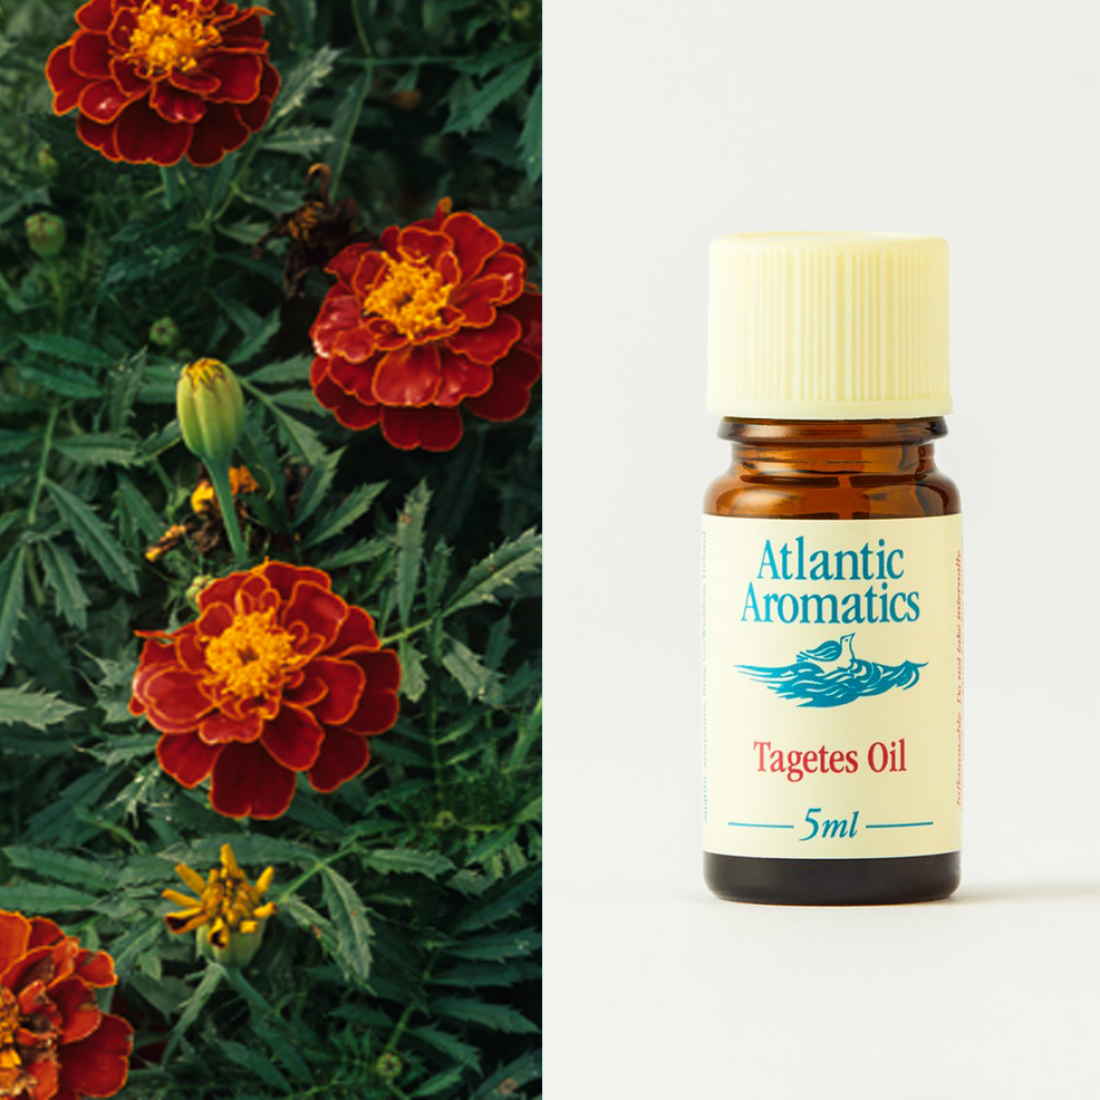 Atlantic Aromatics Tagetes Oil 5ml